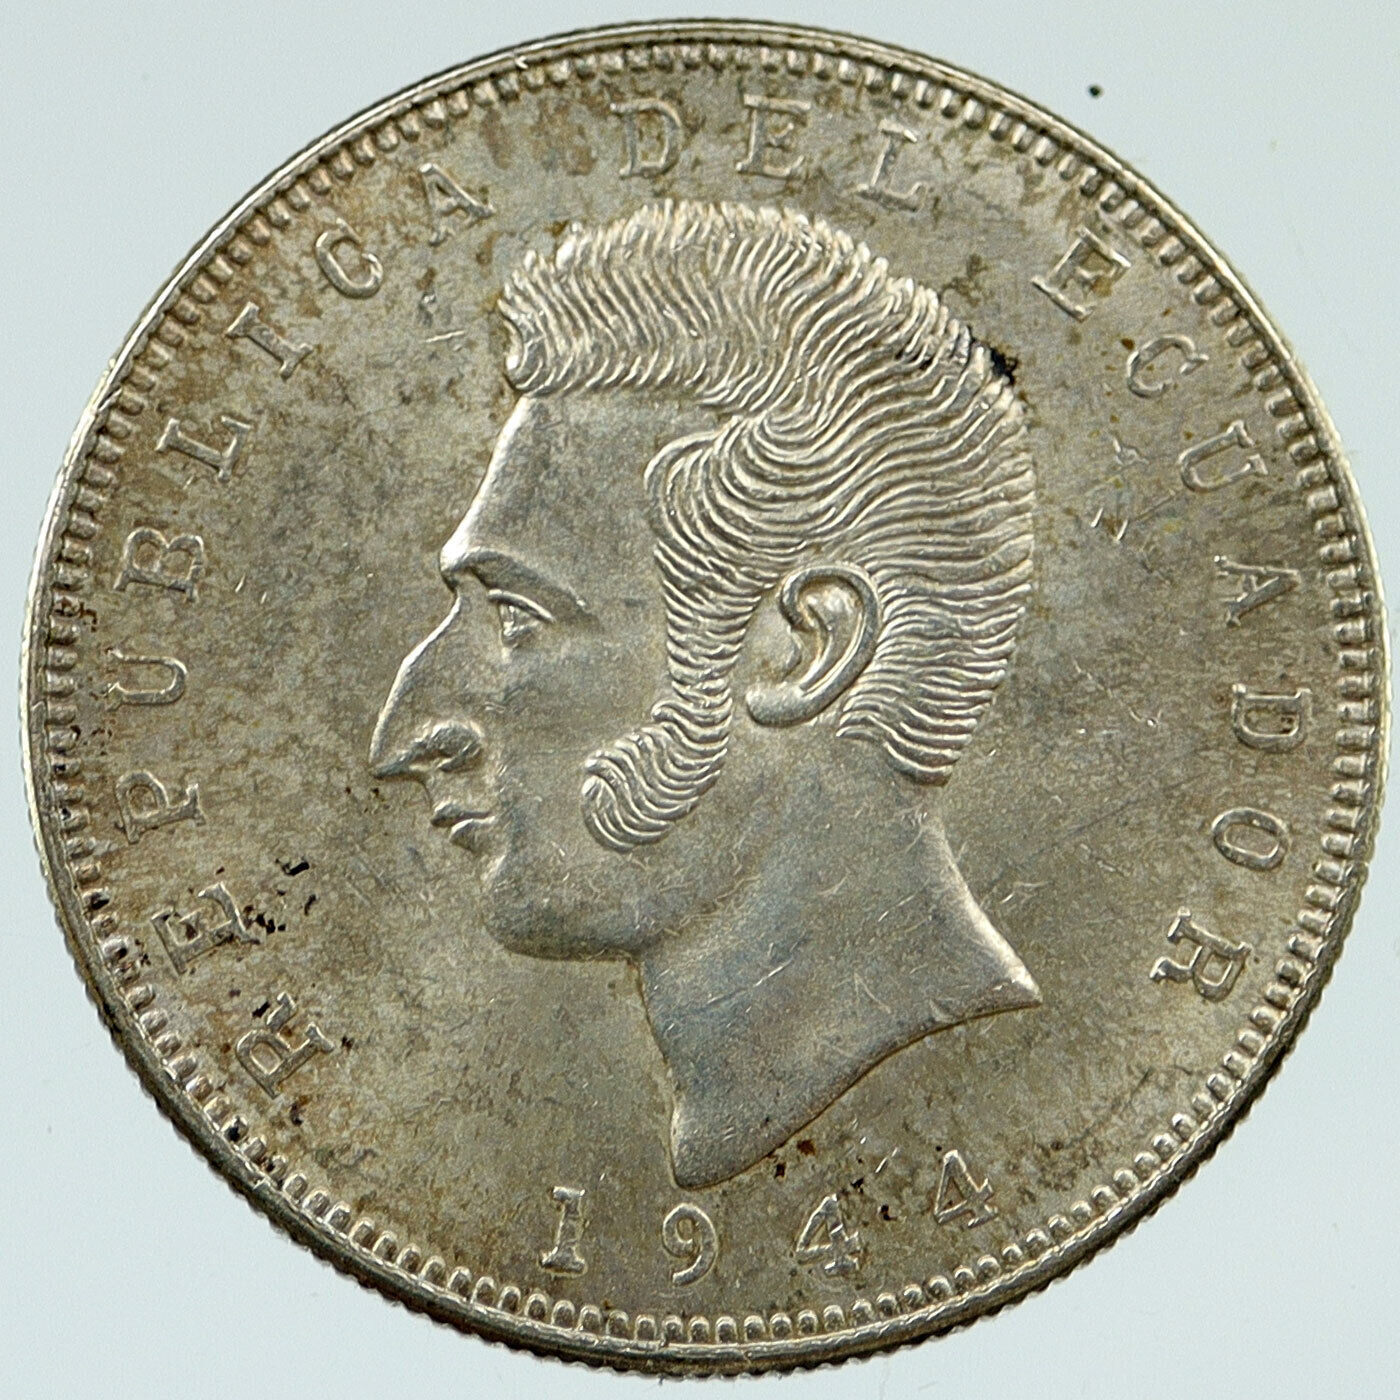 1944 ECUADOR Antonio Jose de Sucre y Alcala VINTAGE Silver 5 Sucres Coin i117221